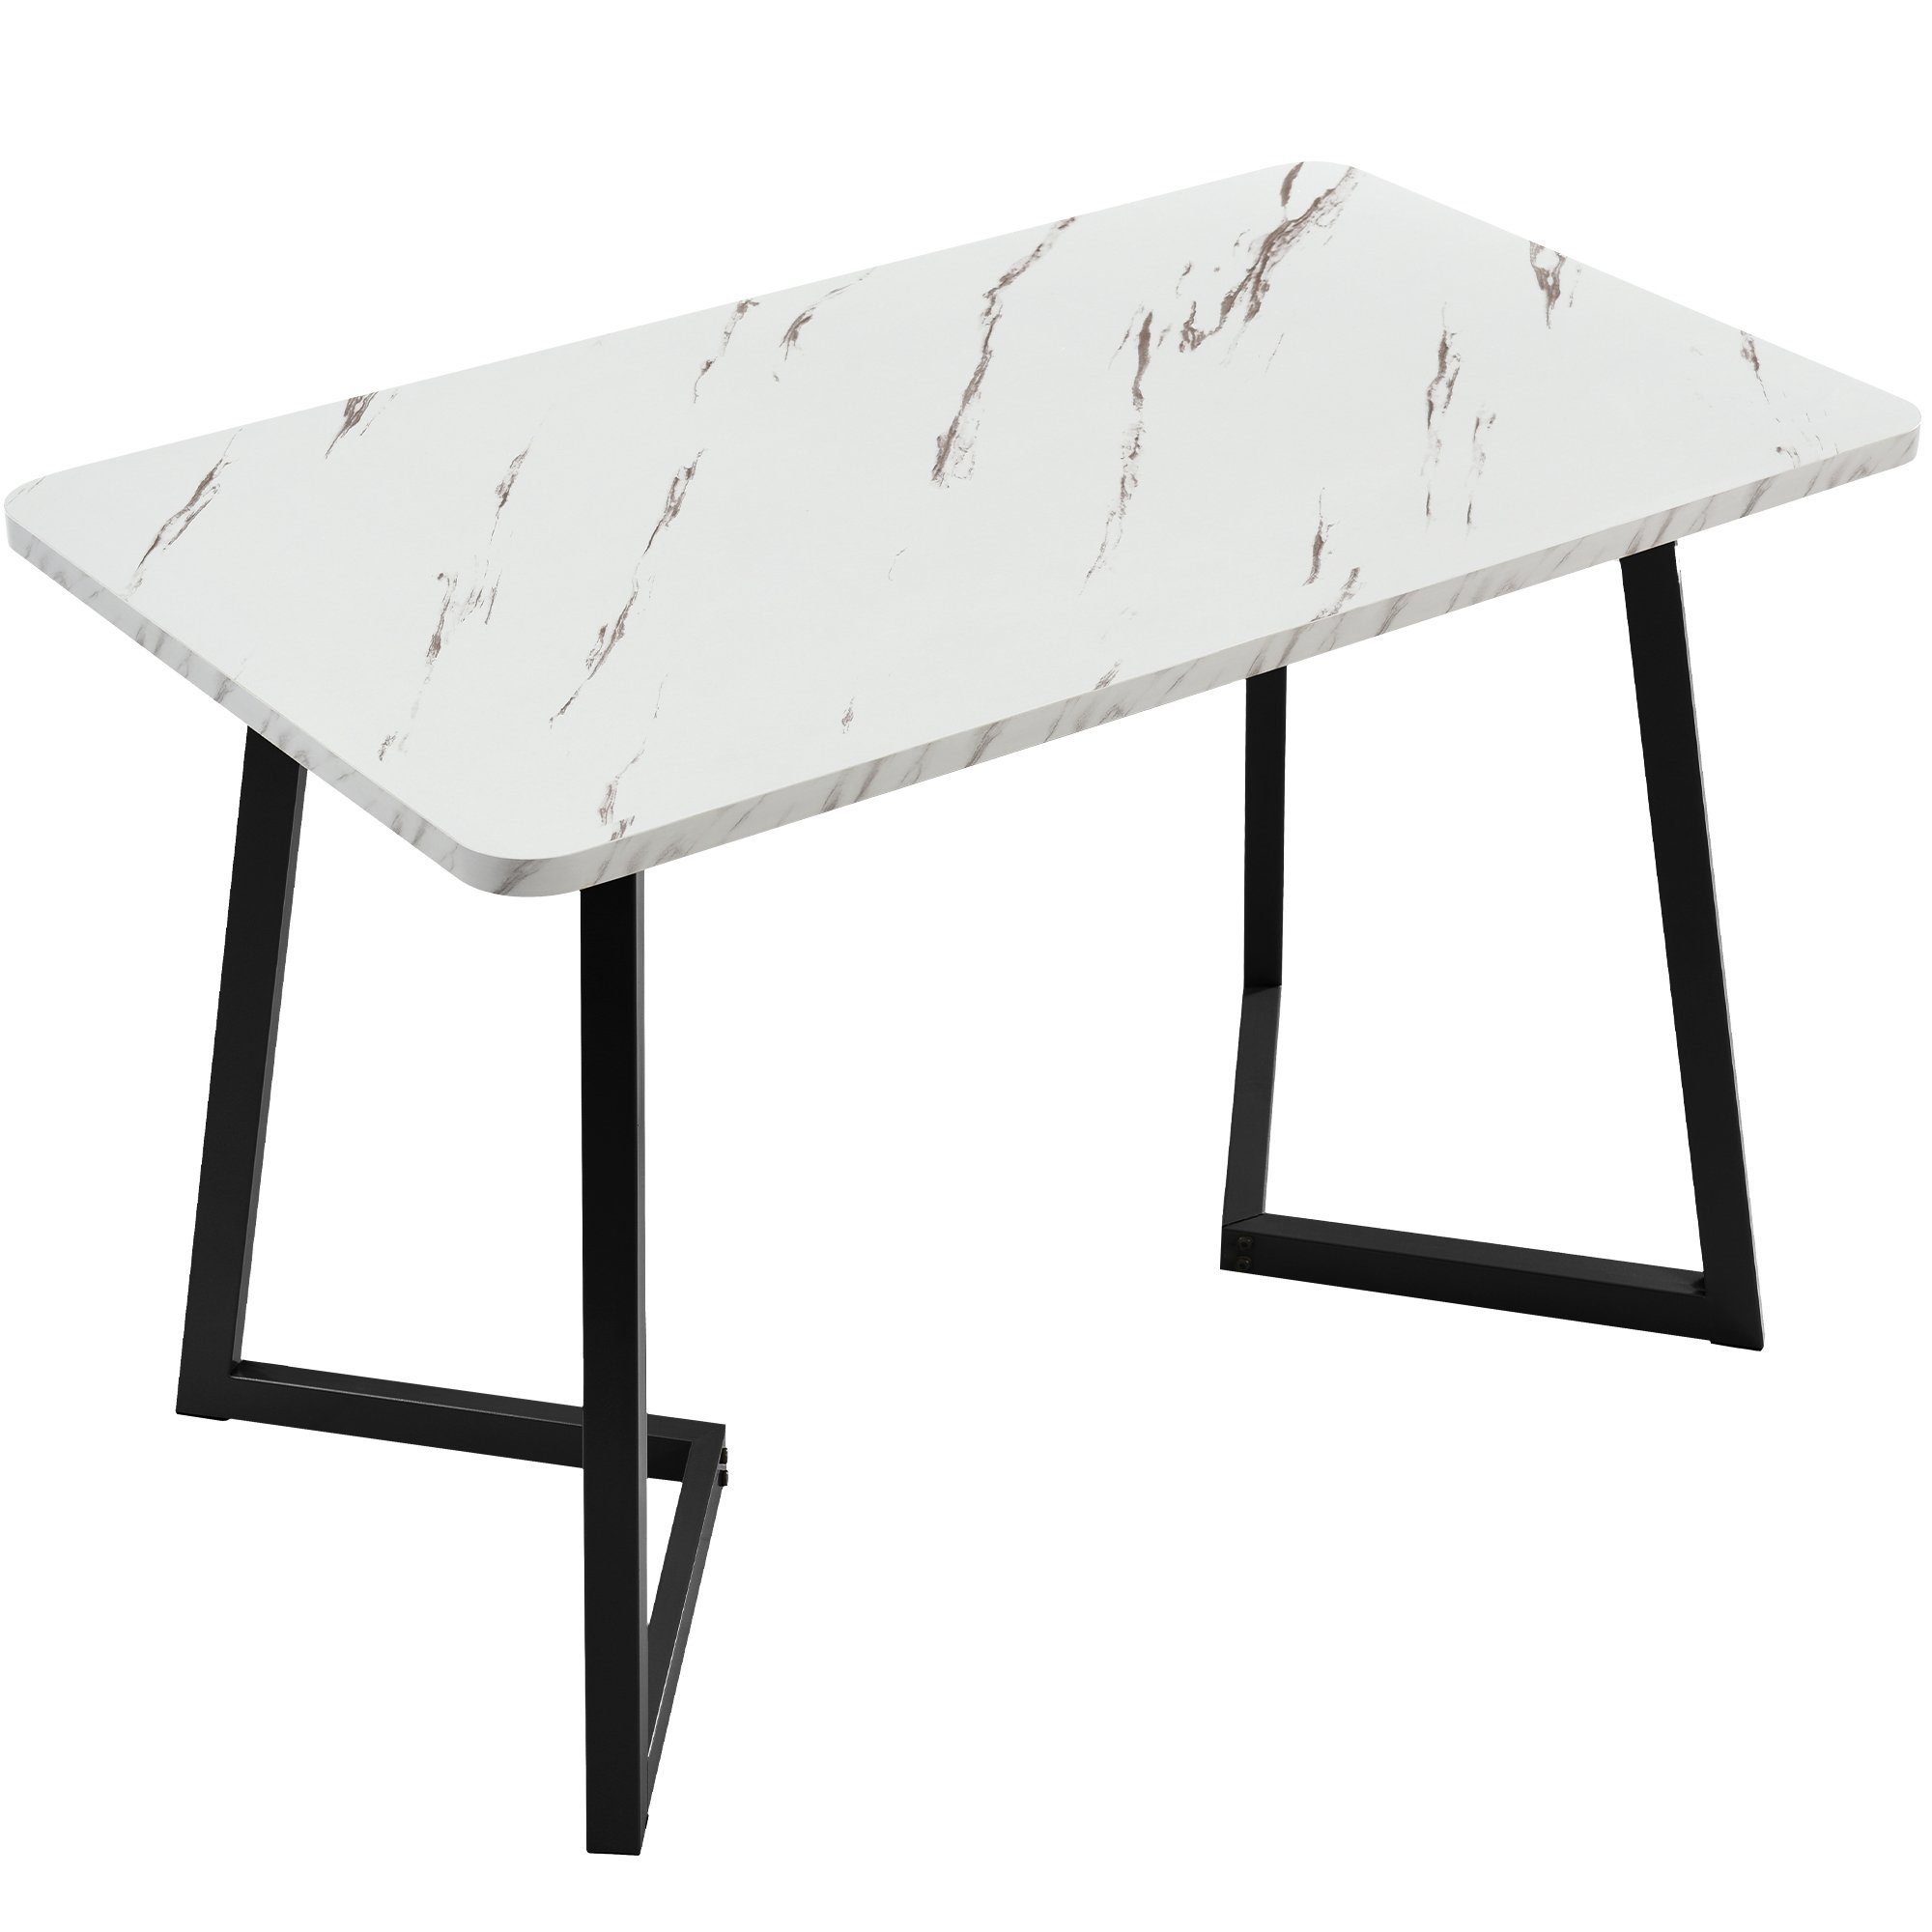 Esstisch, Esszimmerstuhl Rechteckiger 5-tlg., Grau mit Stühlen) mit Essgruppe Ulife Tisch (Set, | Grau Schwarz 4 Diamantmuster, |